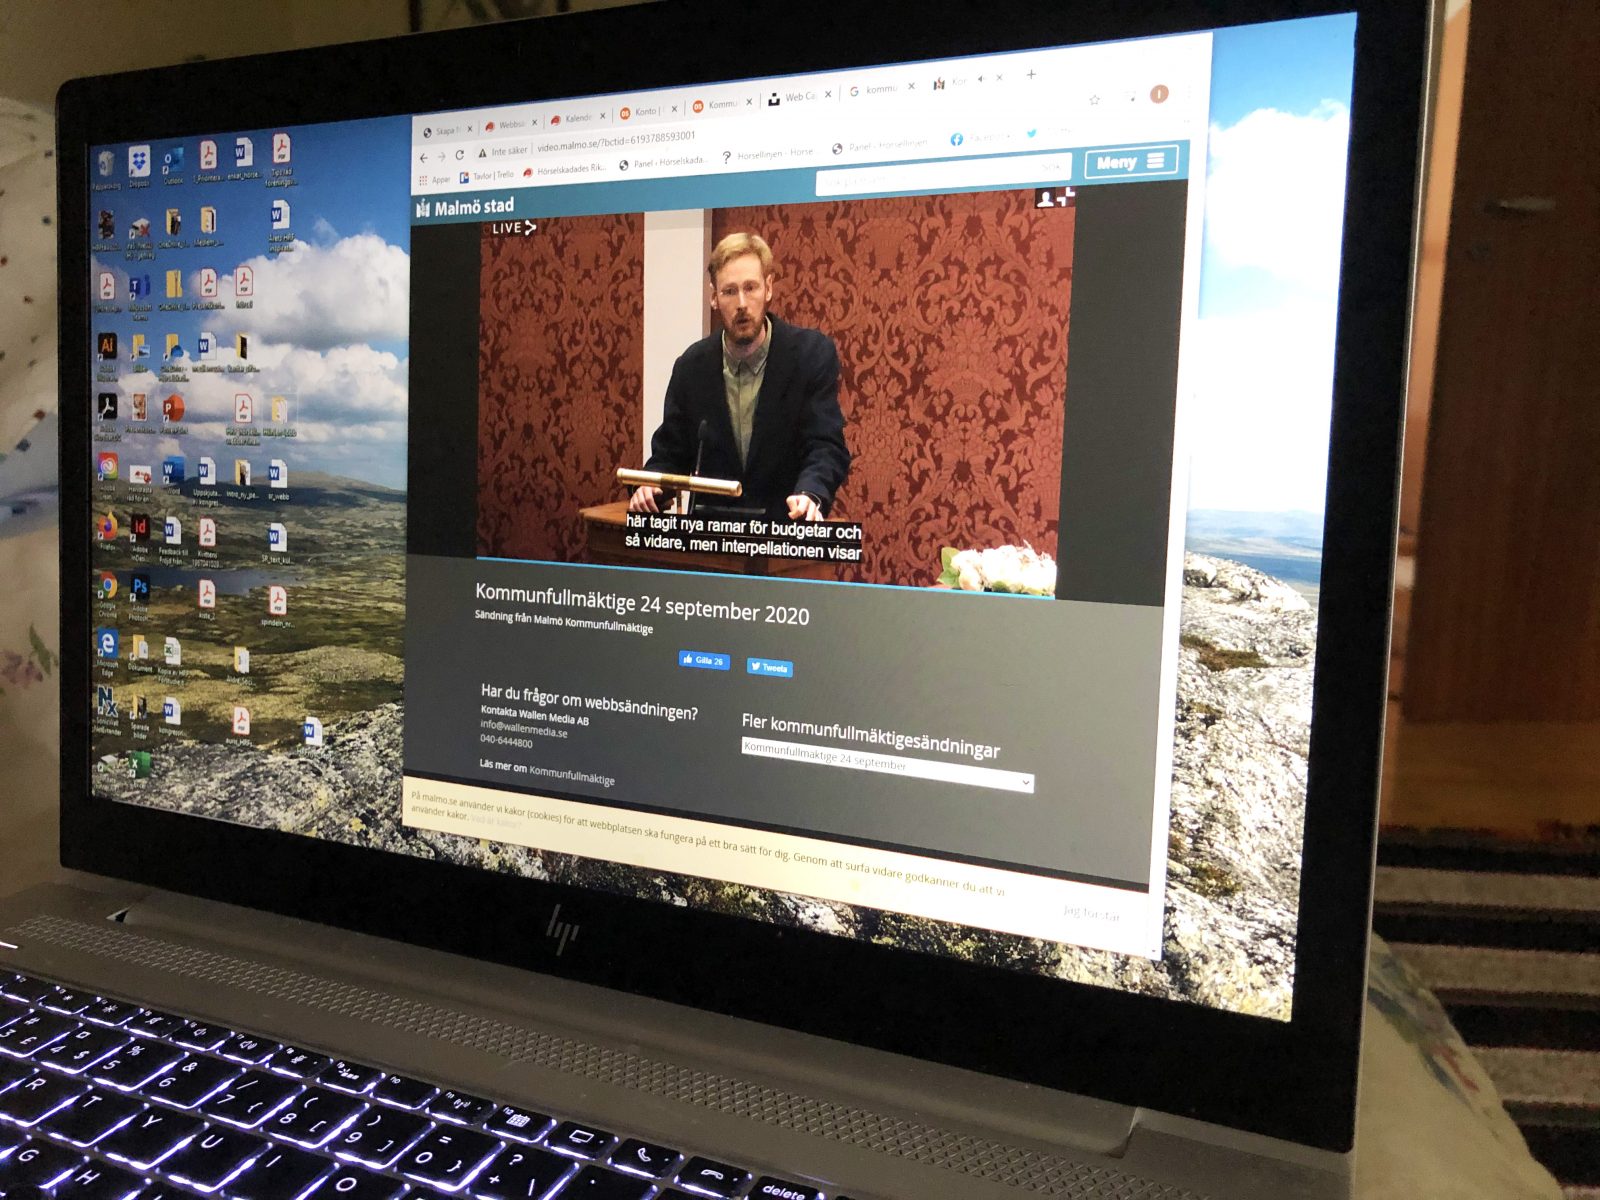 Laptop med webbsändning från Malmö stads kommunfullmäktige.